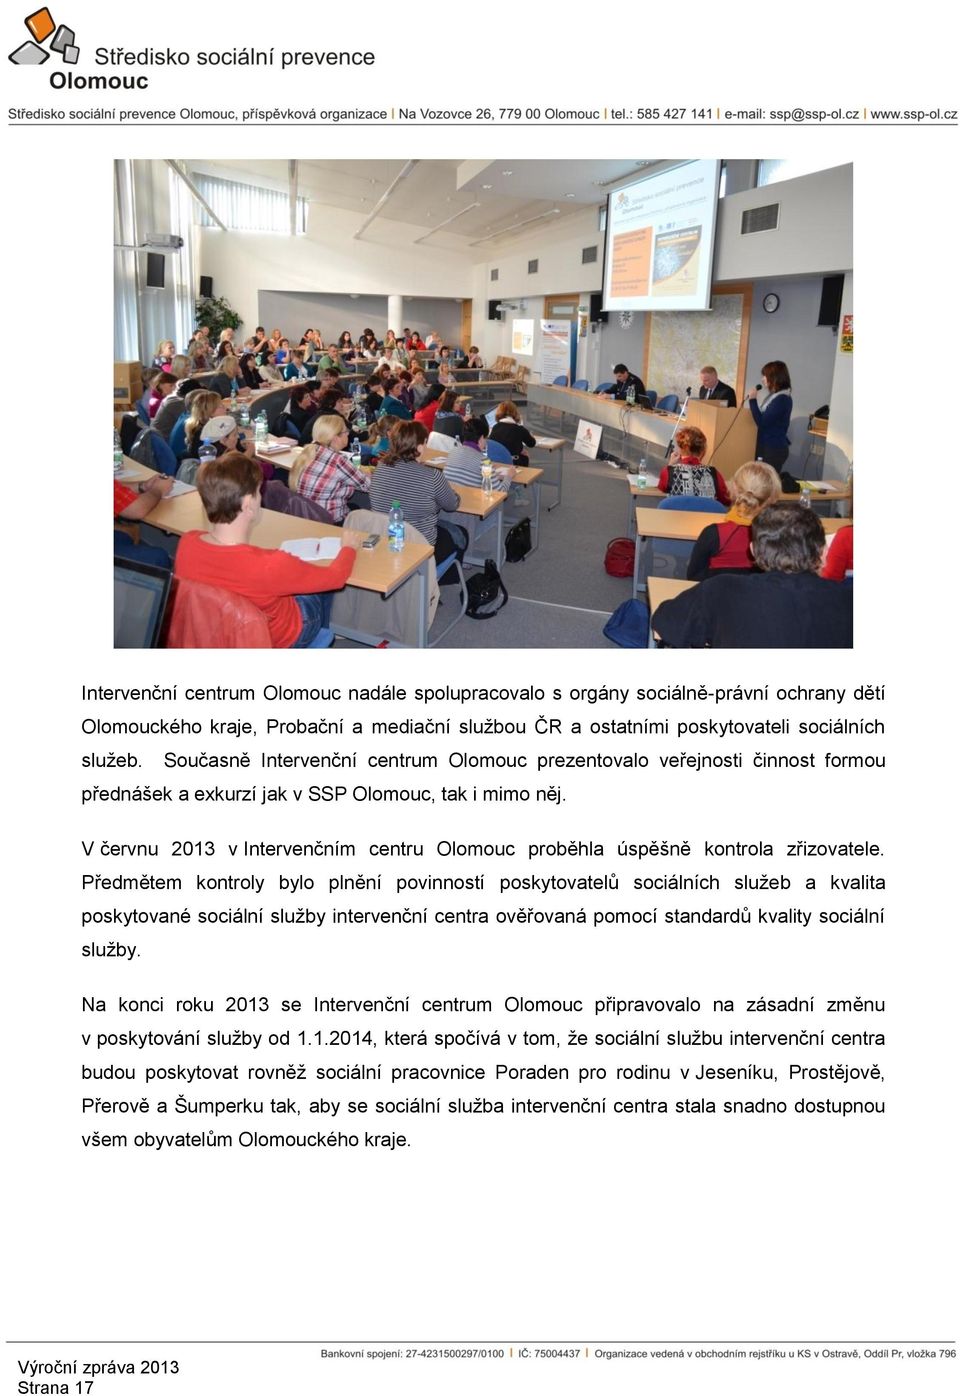 V červnu 2013 v Intervenčním centru Olomouc proběhla úspěšně kontrola zřizovatele.